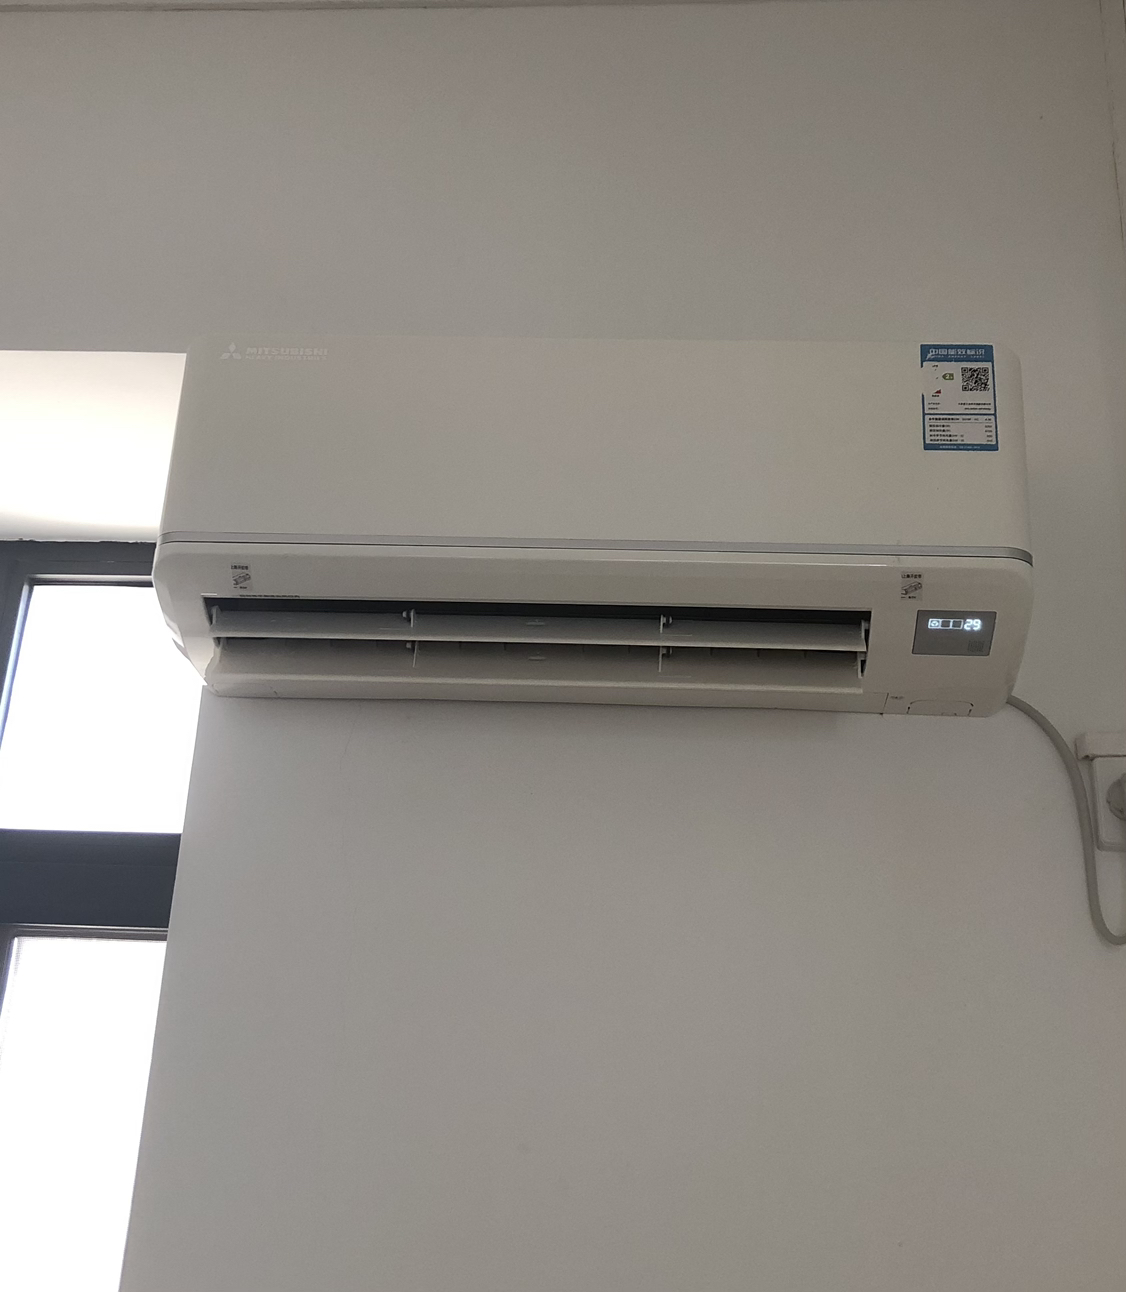 三菱重工空调 2匹变频 云智能 新二级变频 进口压缩机 冷暖挂机 壁挂式 舒适空调 KFR-50GW/MPV5WBp晒单图